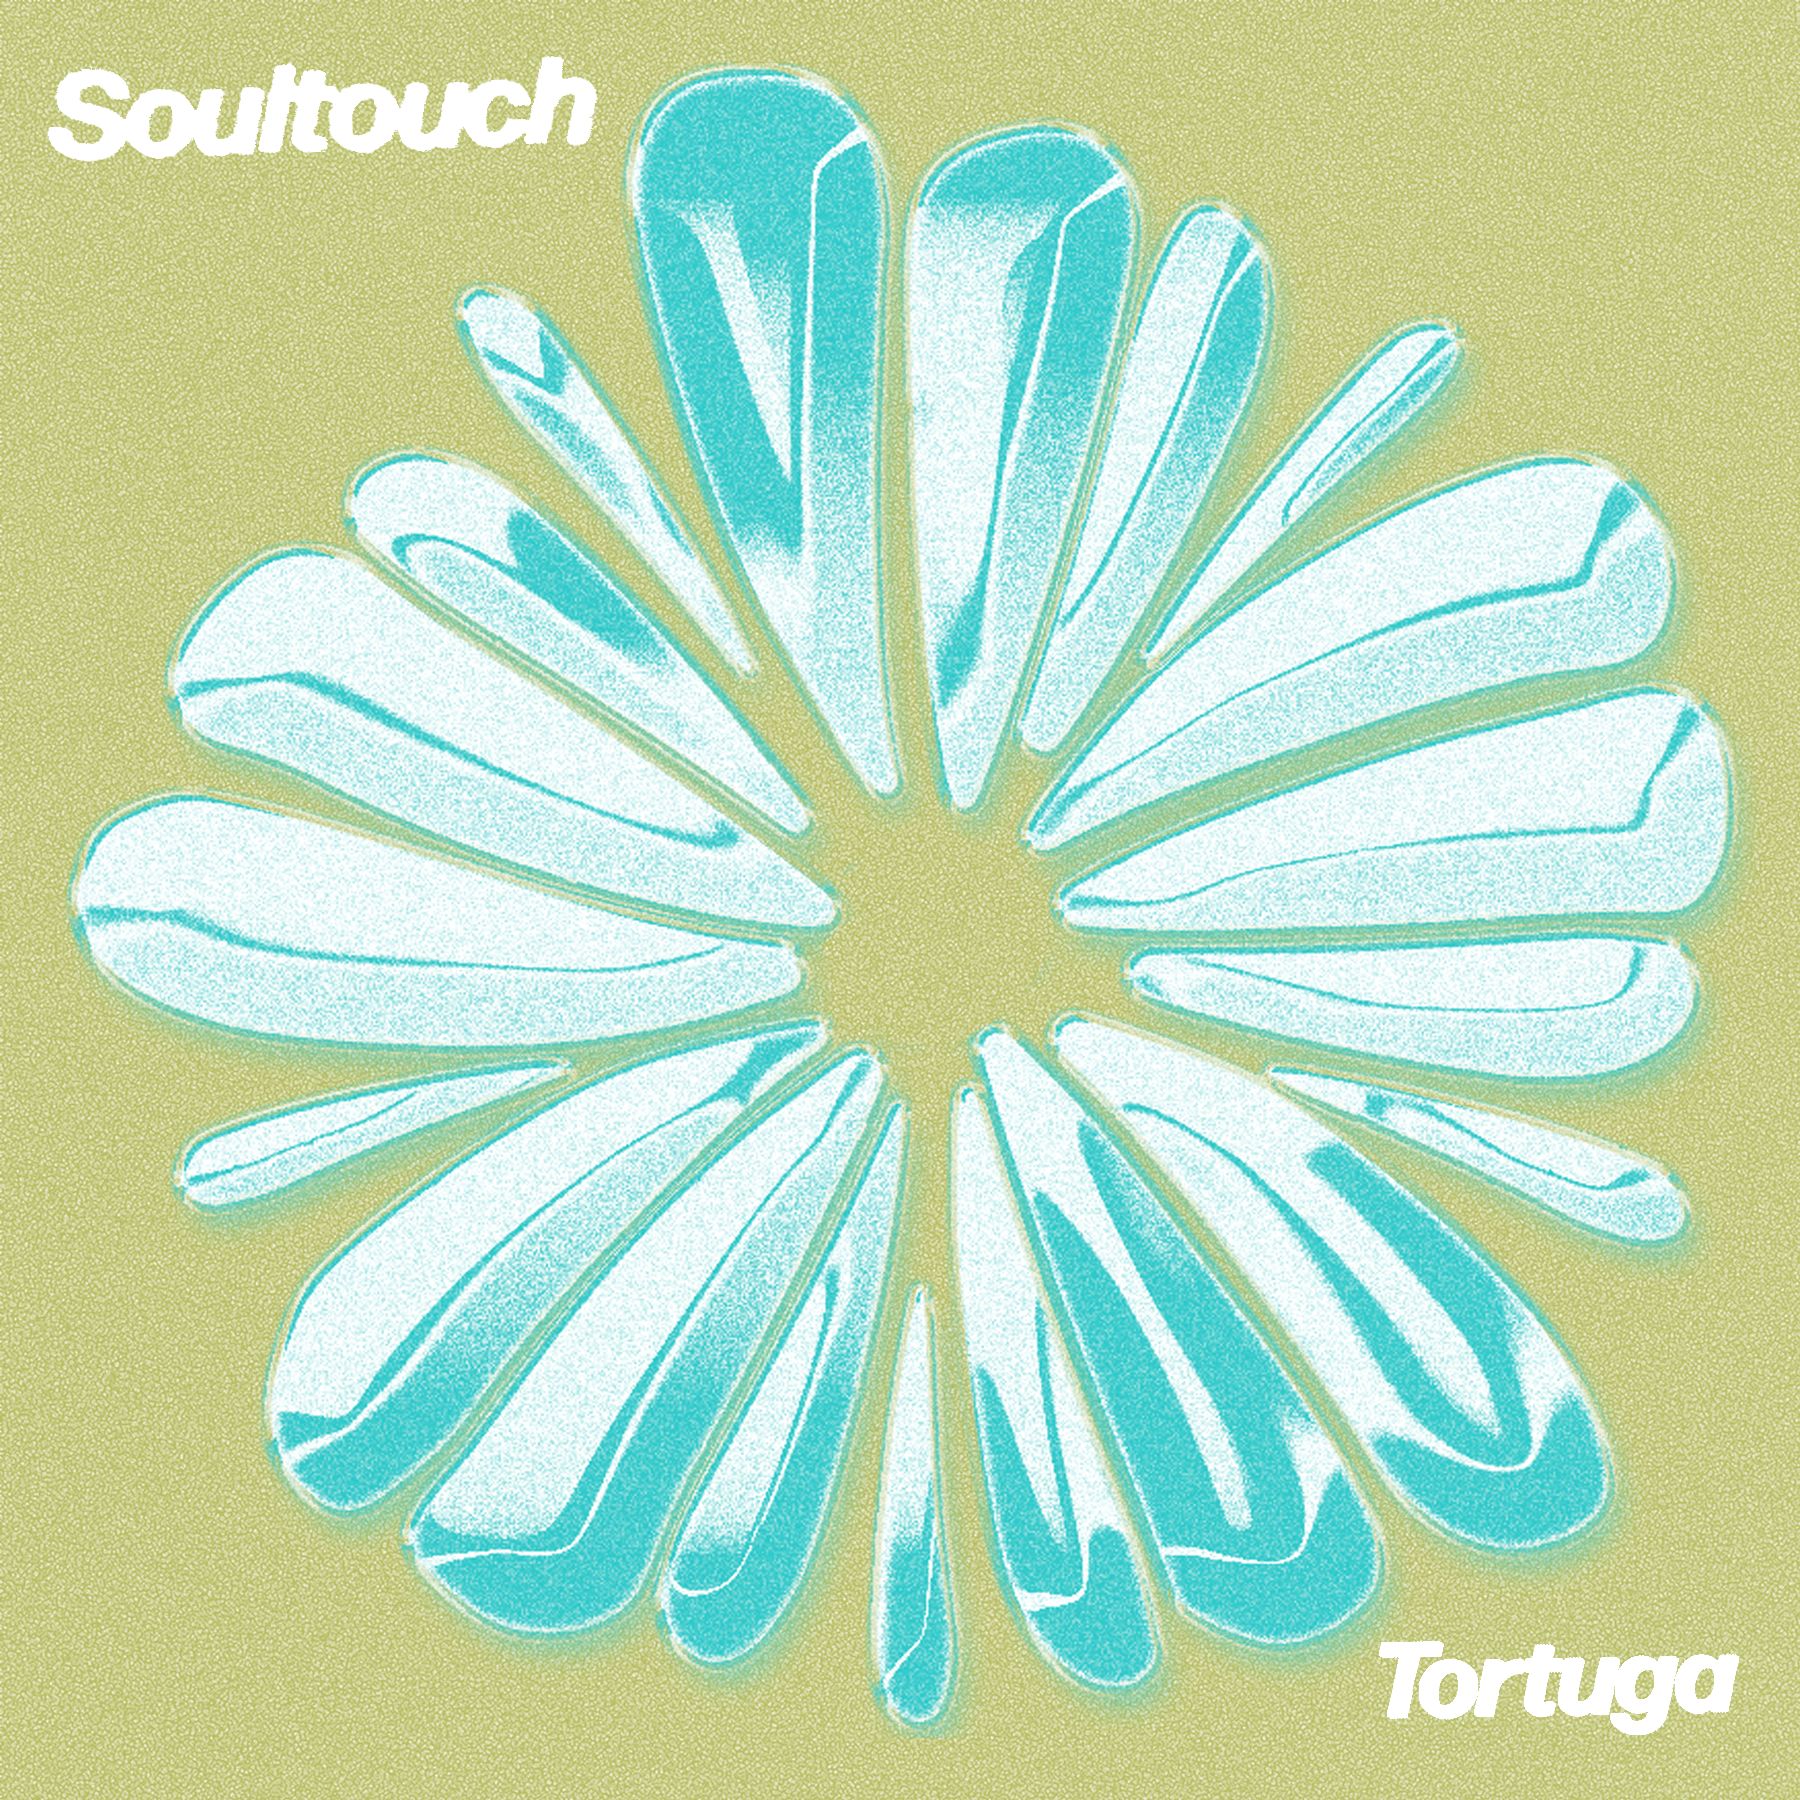 دانلود PREMIERE : Tortuga - Soultouch